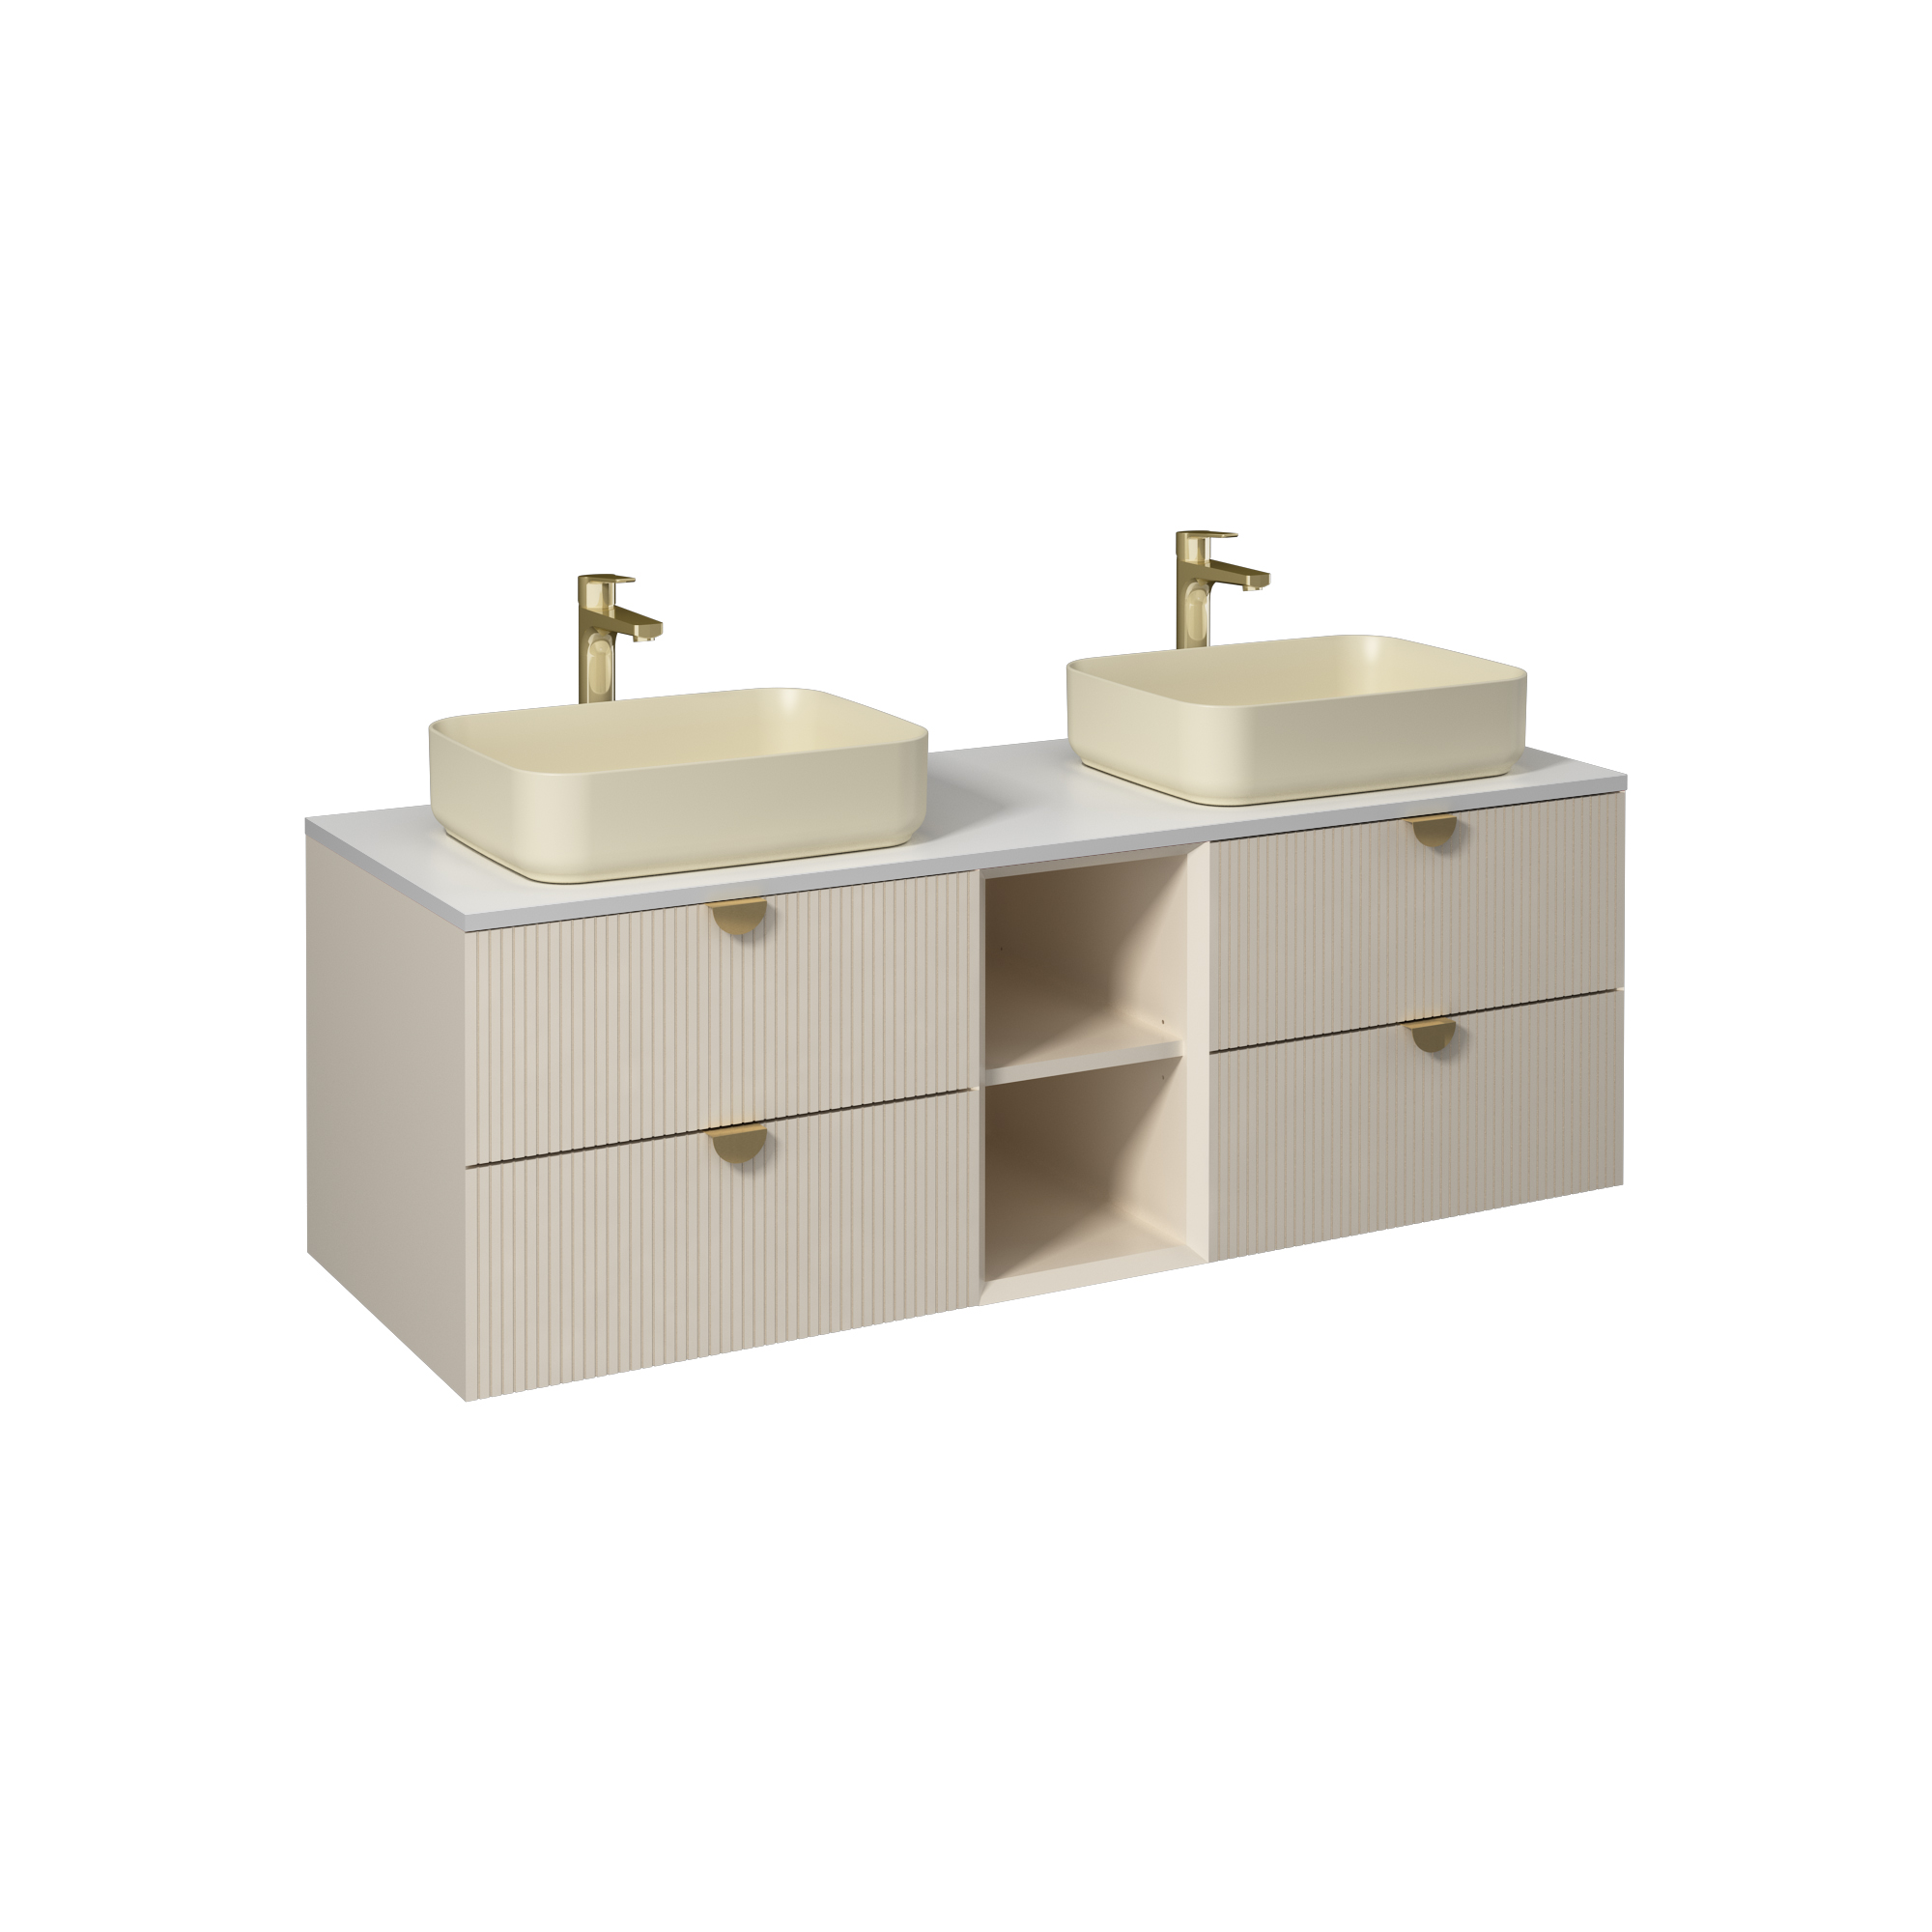 Infinity Washbasin Cabinet Cream, with Ivory Washbasin 59"